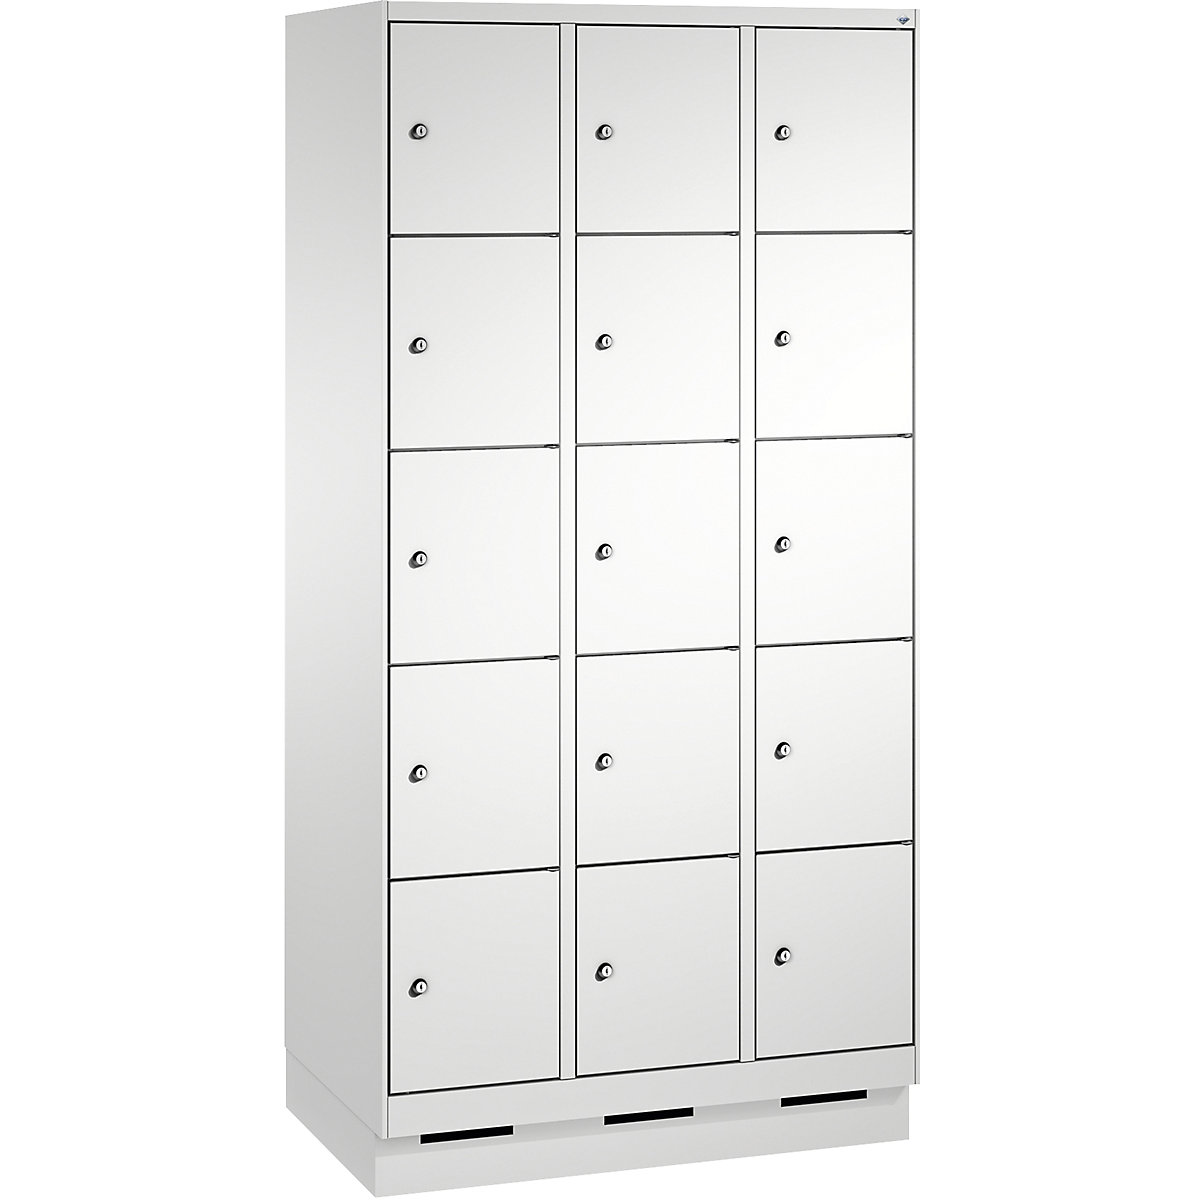 Armoire à casiers sur socle EVOLO – C+P, 3 compartiments, 5 casiers chacun, largeur compartiments 300 mm, gris clair-12